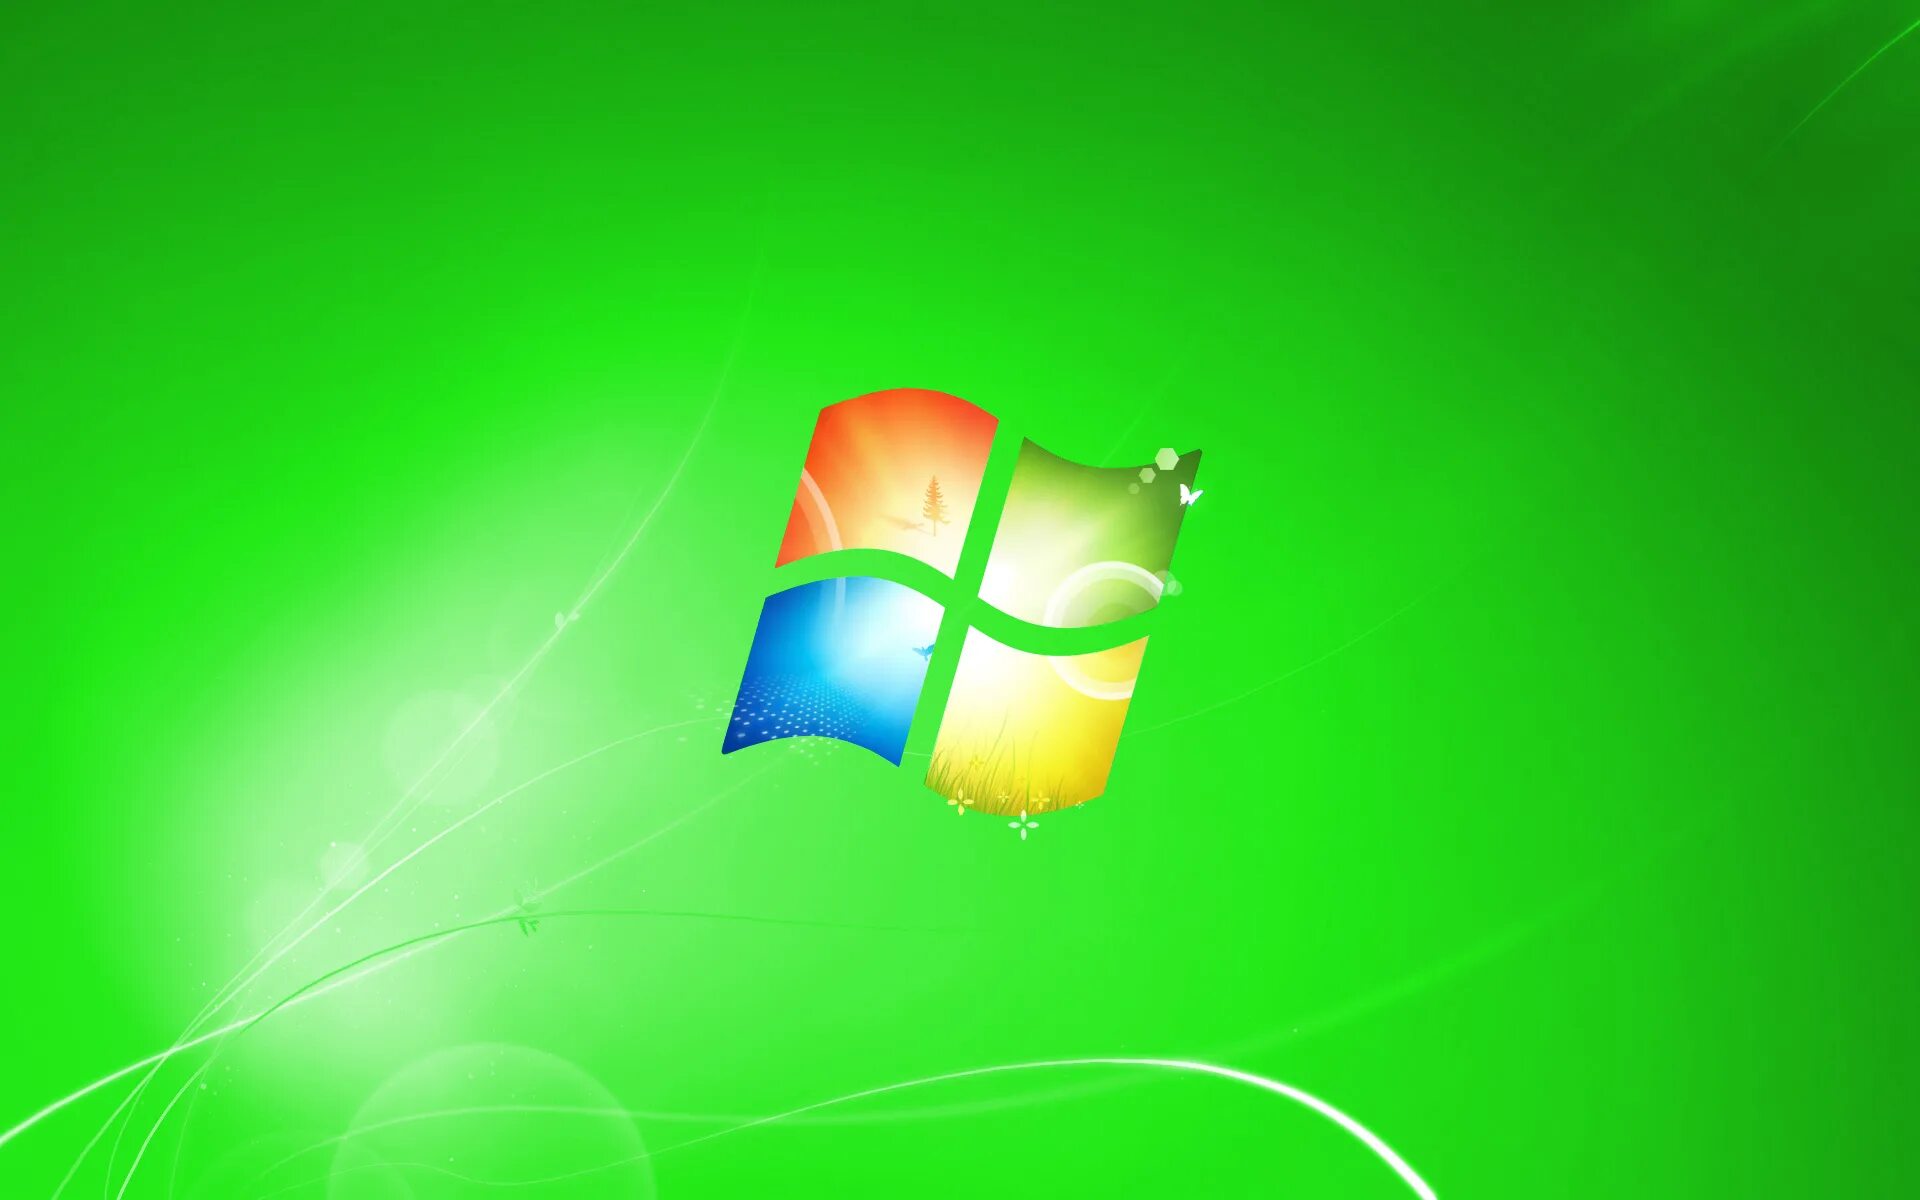 Виндовс 7. Заставка виндовс. Картинки Windows 7. Заставка Windows 7. Windows 7 life